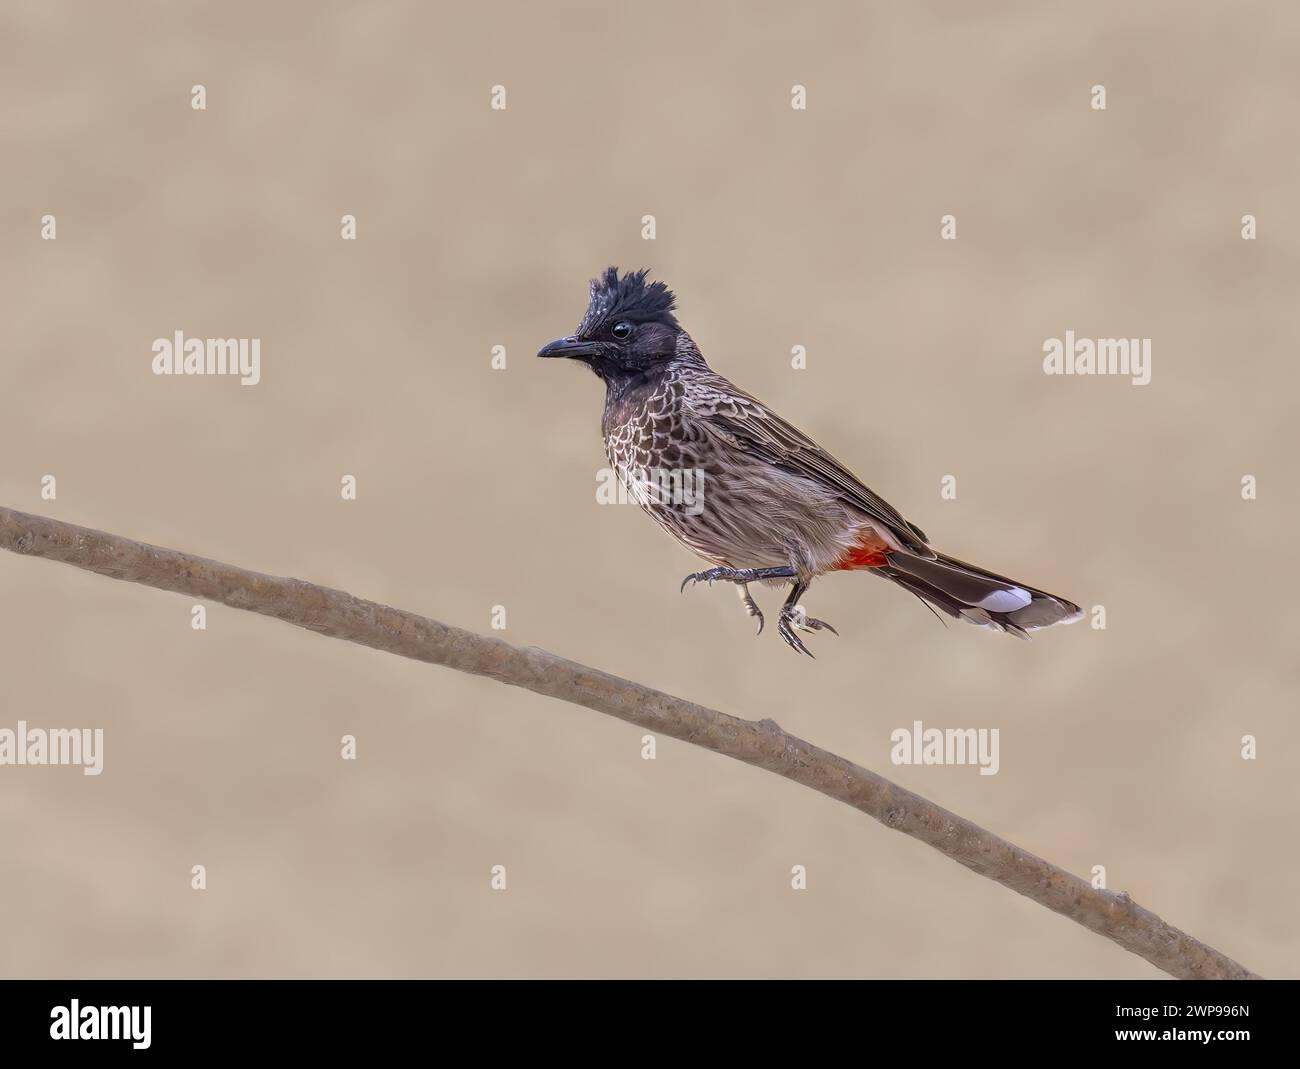 Bulbul con sfiato rosso, Pycnonotus cafer, saltando su un ramoscello, questa specie di uccelli asiatici è una specie aliena invasiva che si diffonde nelle Isole Canarie Fuerteventura Foto Stock